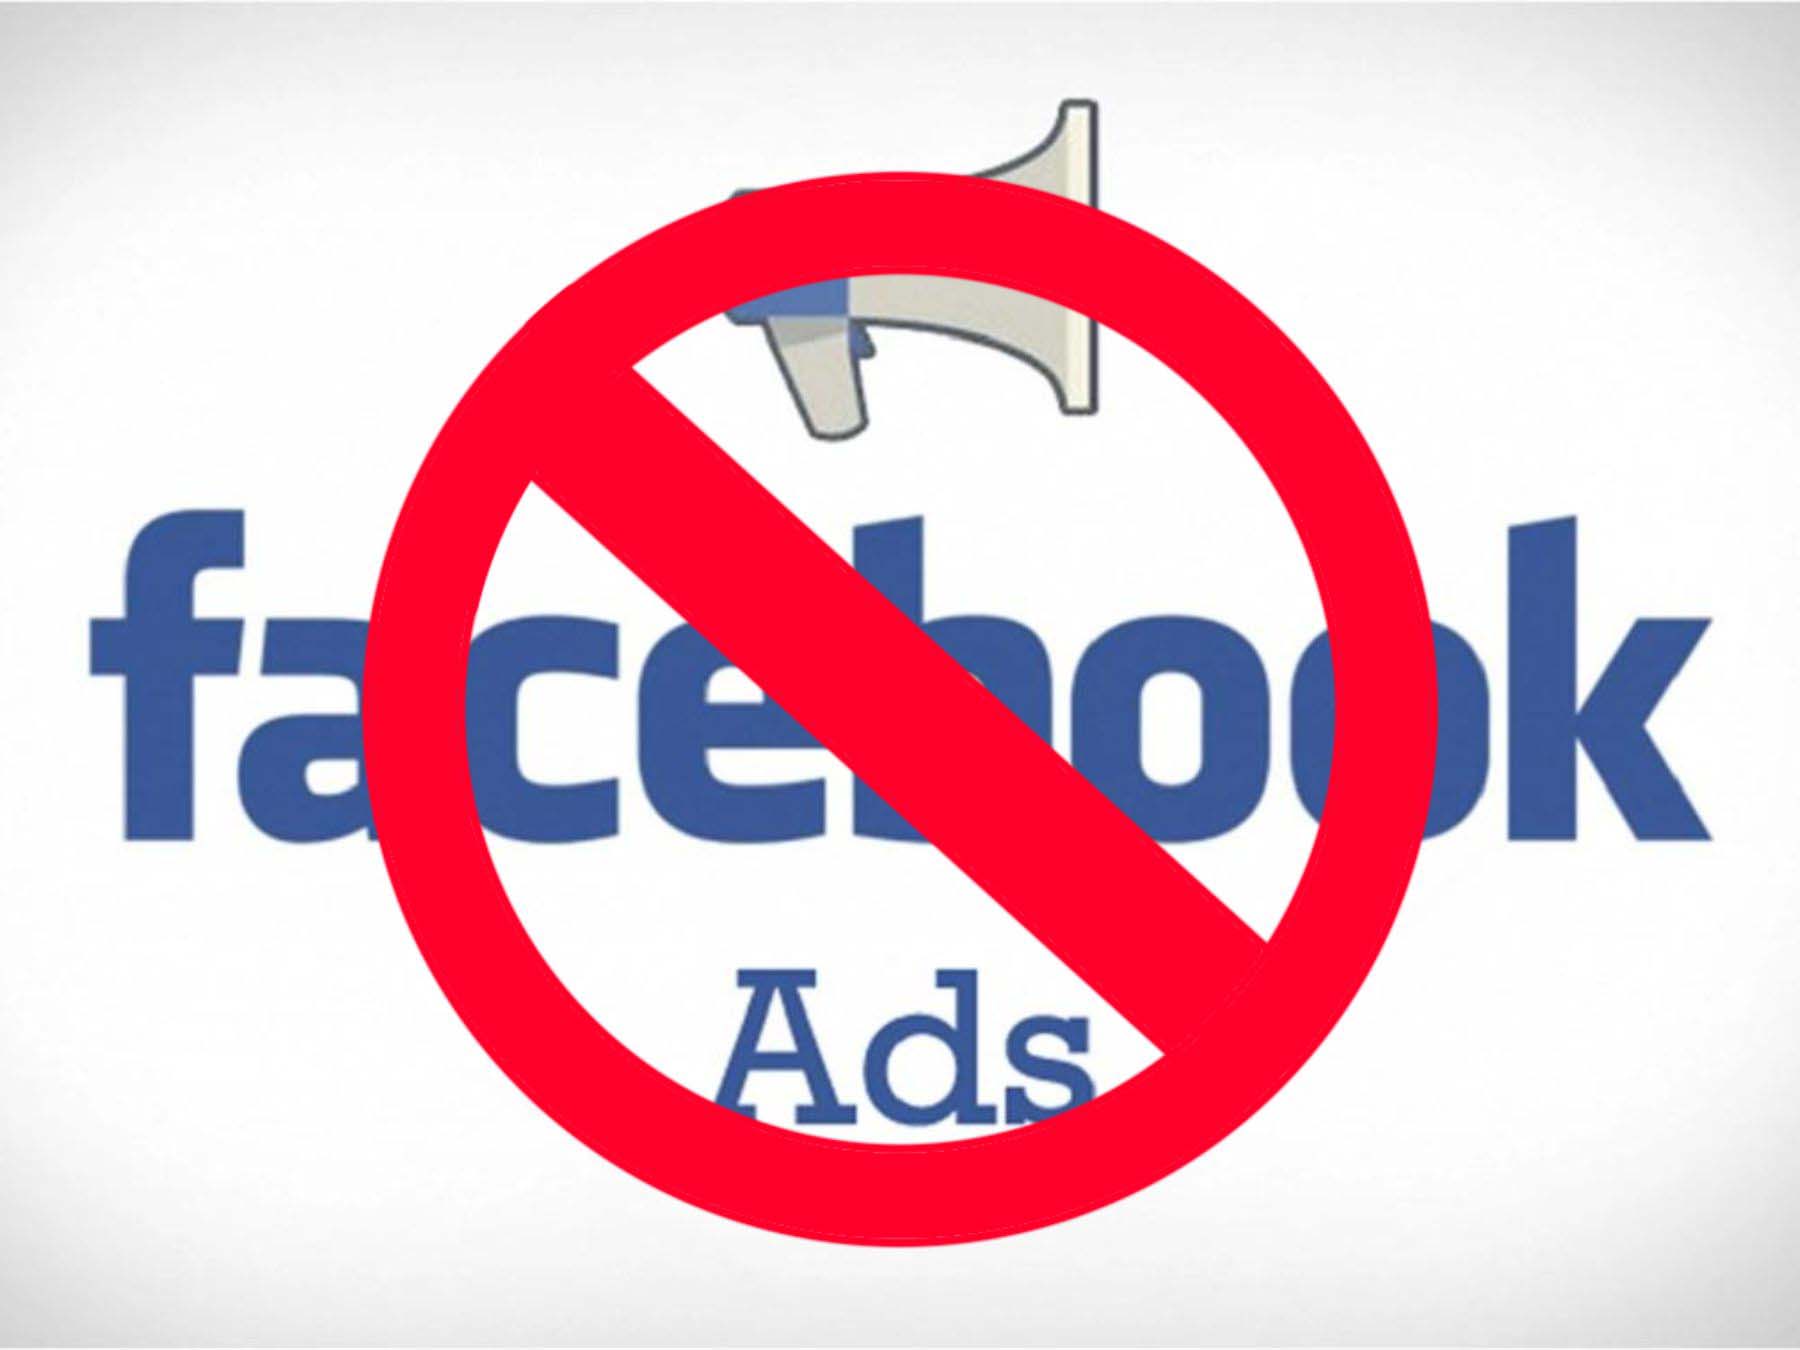 Đọc kỹ chính sách Facebook trước khi tạo quảng cáo